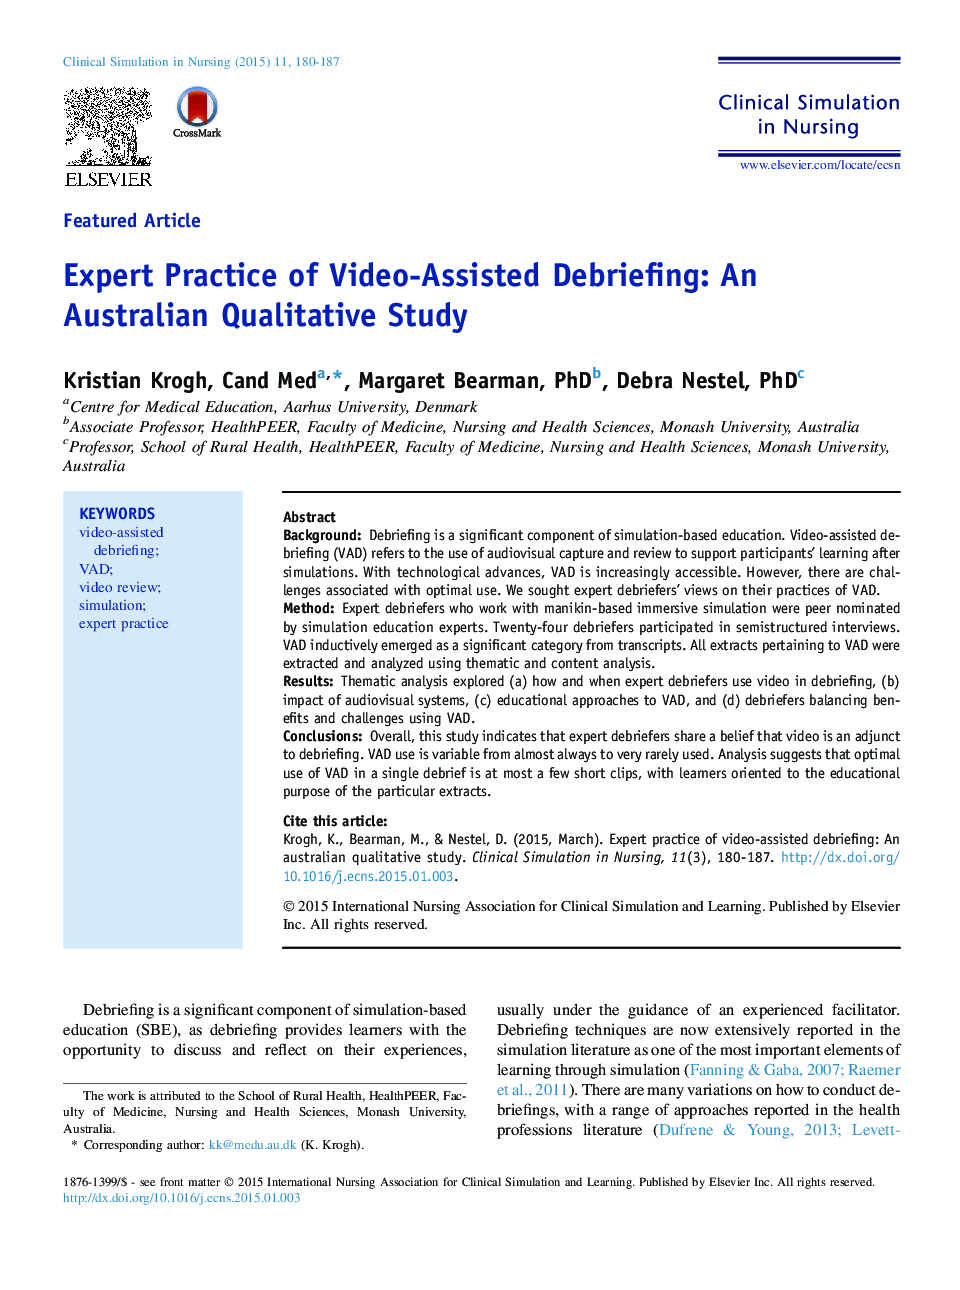 کارشناسی ارزیابی کمک های ویدئویی: یک مطالعه کیفی استرالیا 